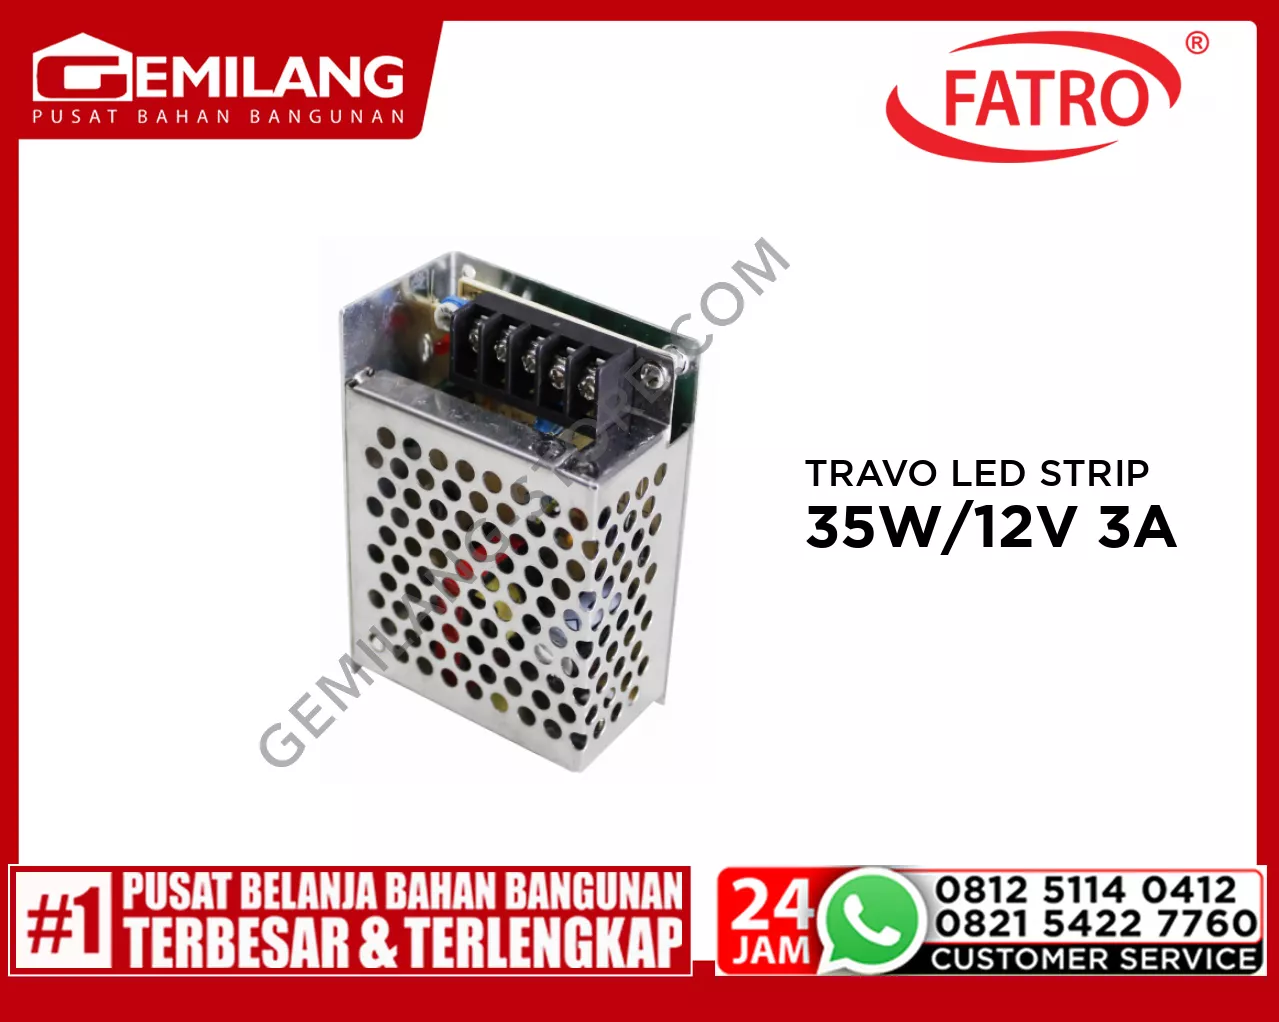 FATRO TRAVO LED STRIP 35W/12V 3A